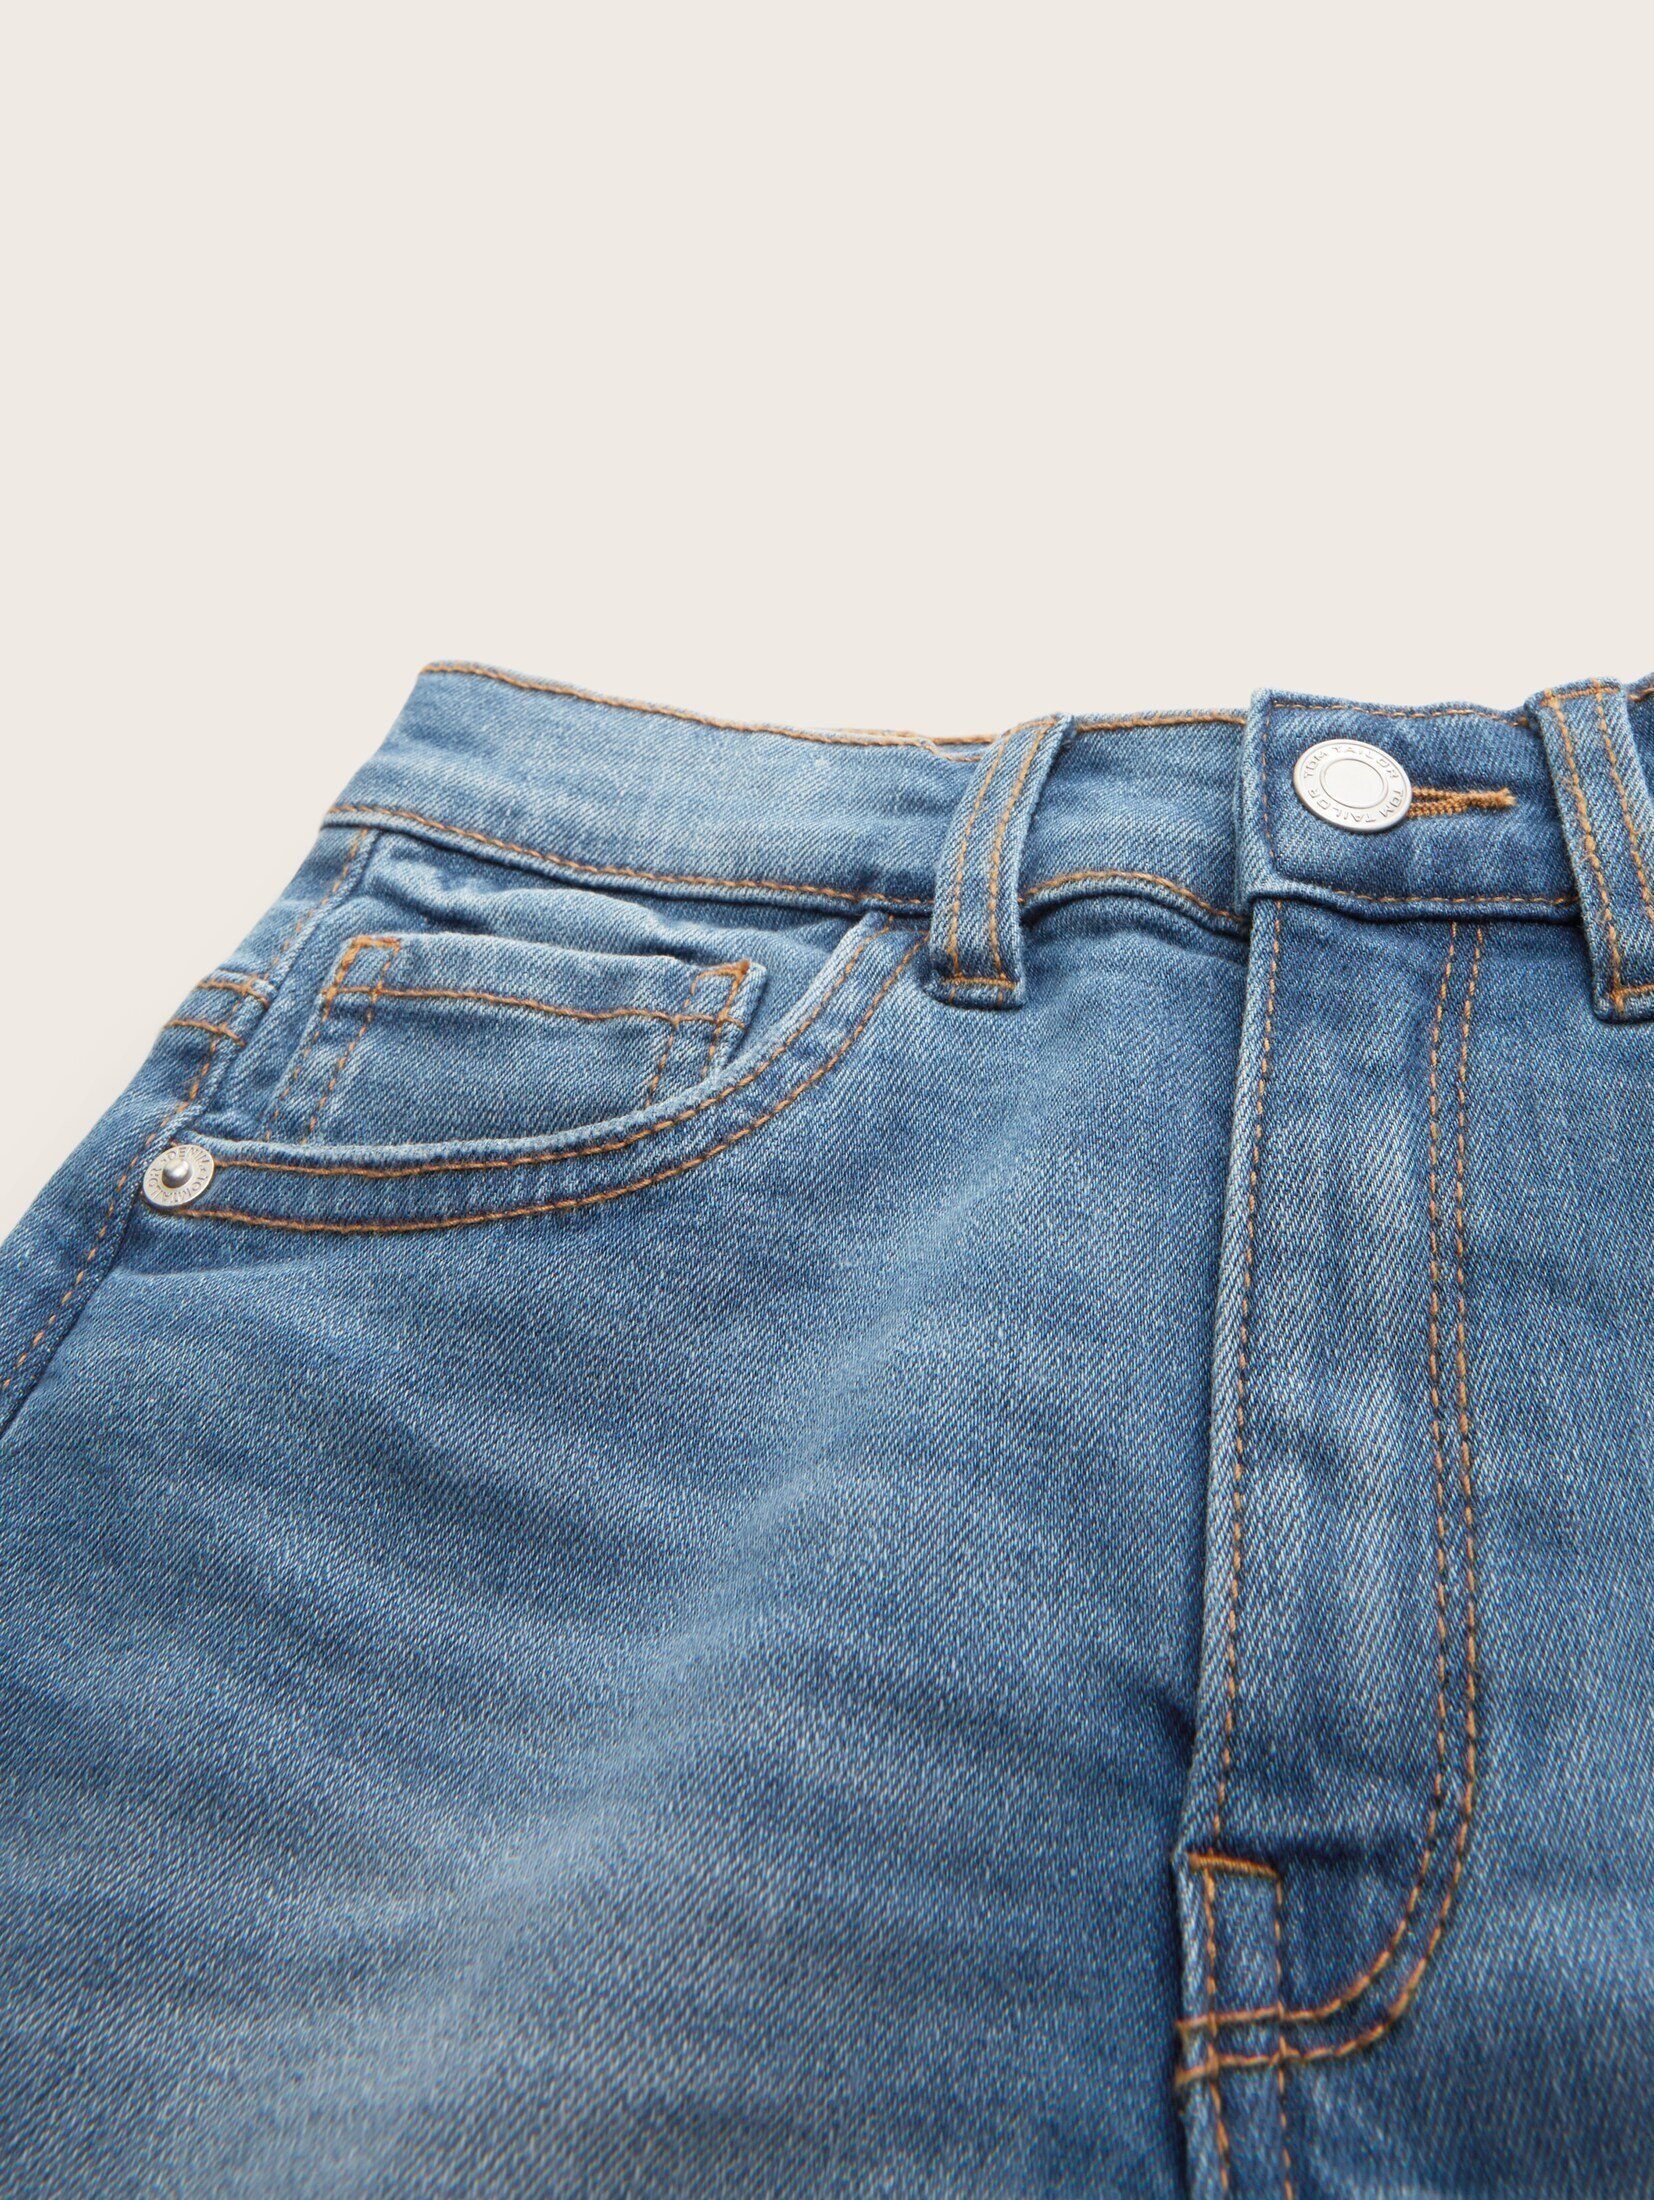 Jeansshorts mit TOM Waschung leichter TAILOR Jeansshorts